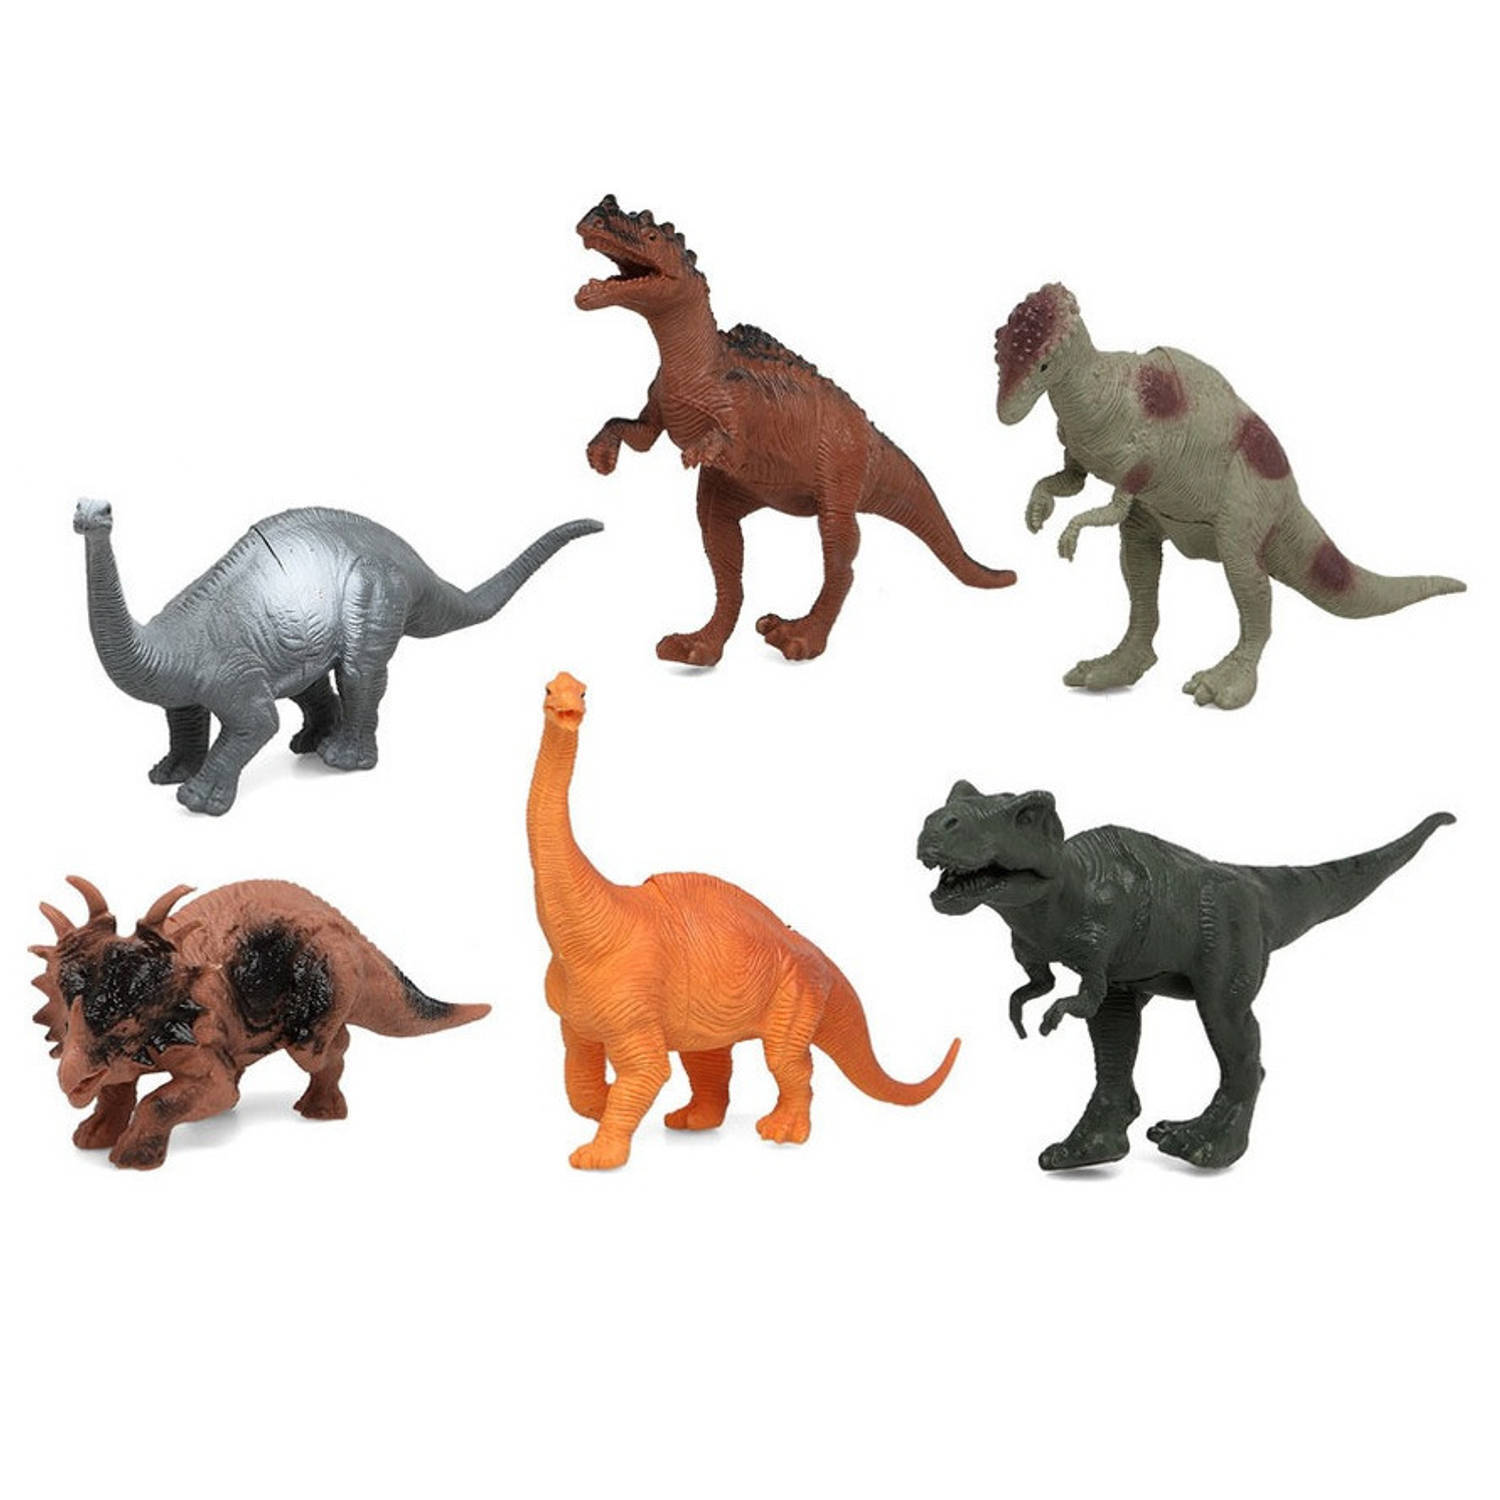 Fiesta carnavales Speelgoed dino dieren figuren 6x stuks dinosaurussen van kunststof